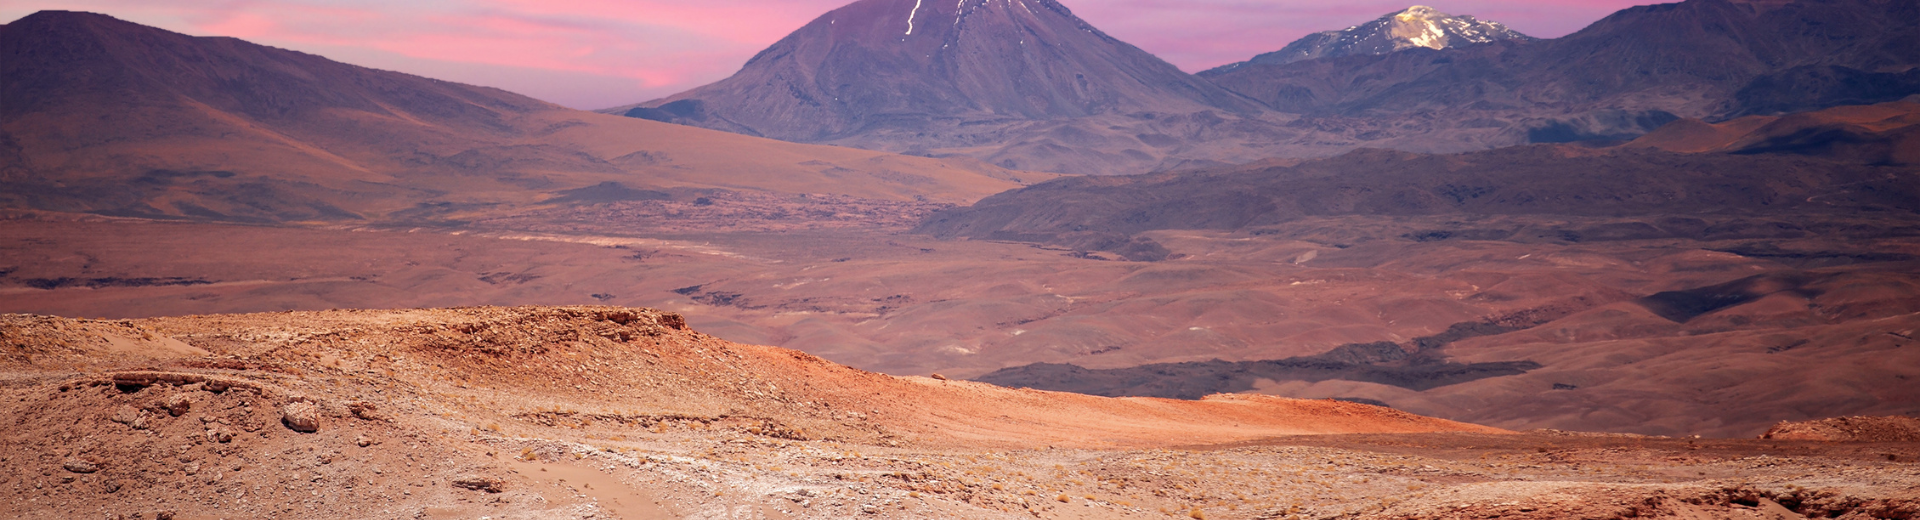 Visite o Deserto de Atacama